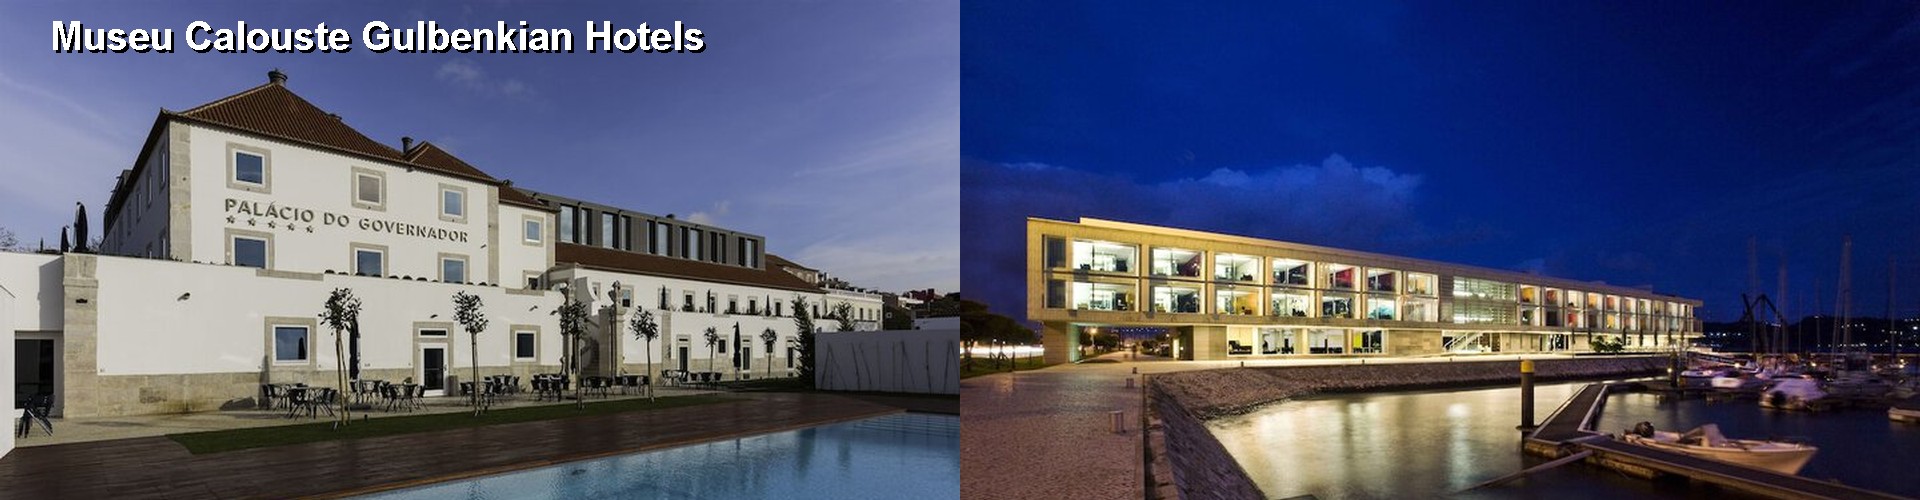 5 Best Hotels near Museu Calouste Gulbenkian